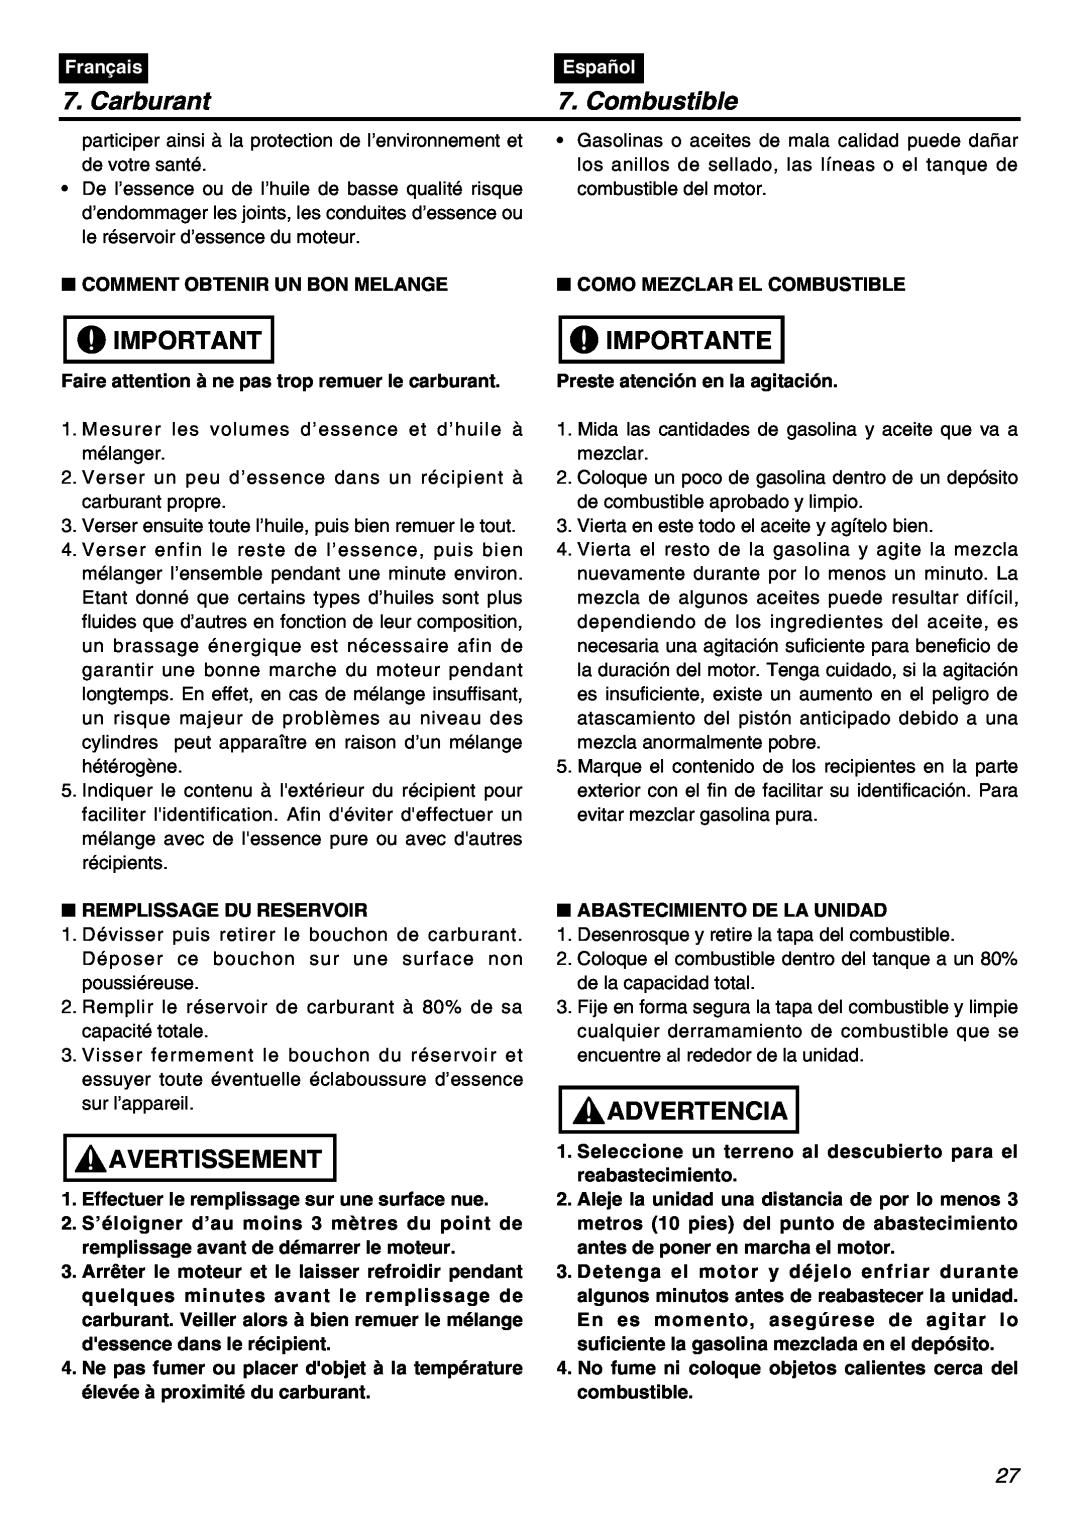 RedMax EBZ7100RH-CA, EBZ7100-CA manual Carburant, Combustible, Importante, Avertissement, Advertencia, Français, Español 